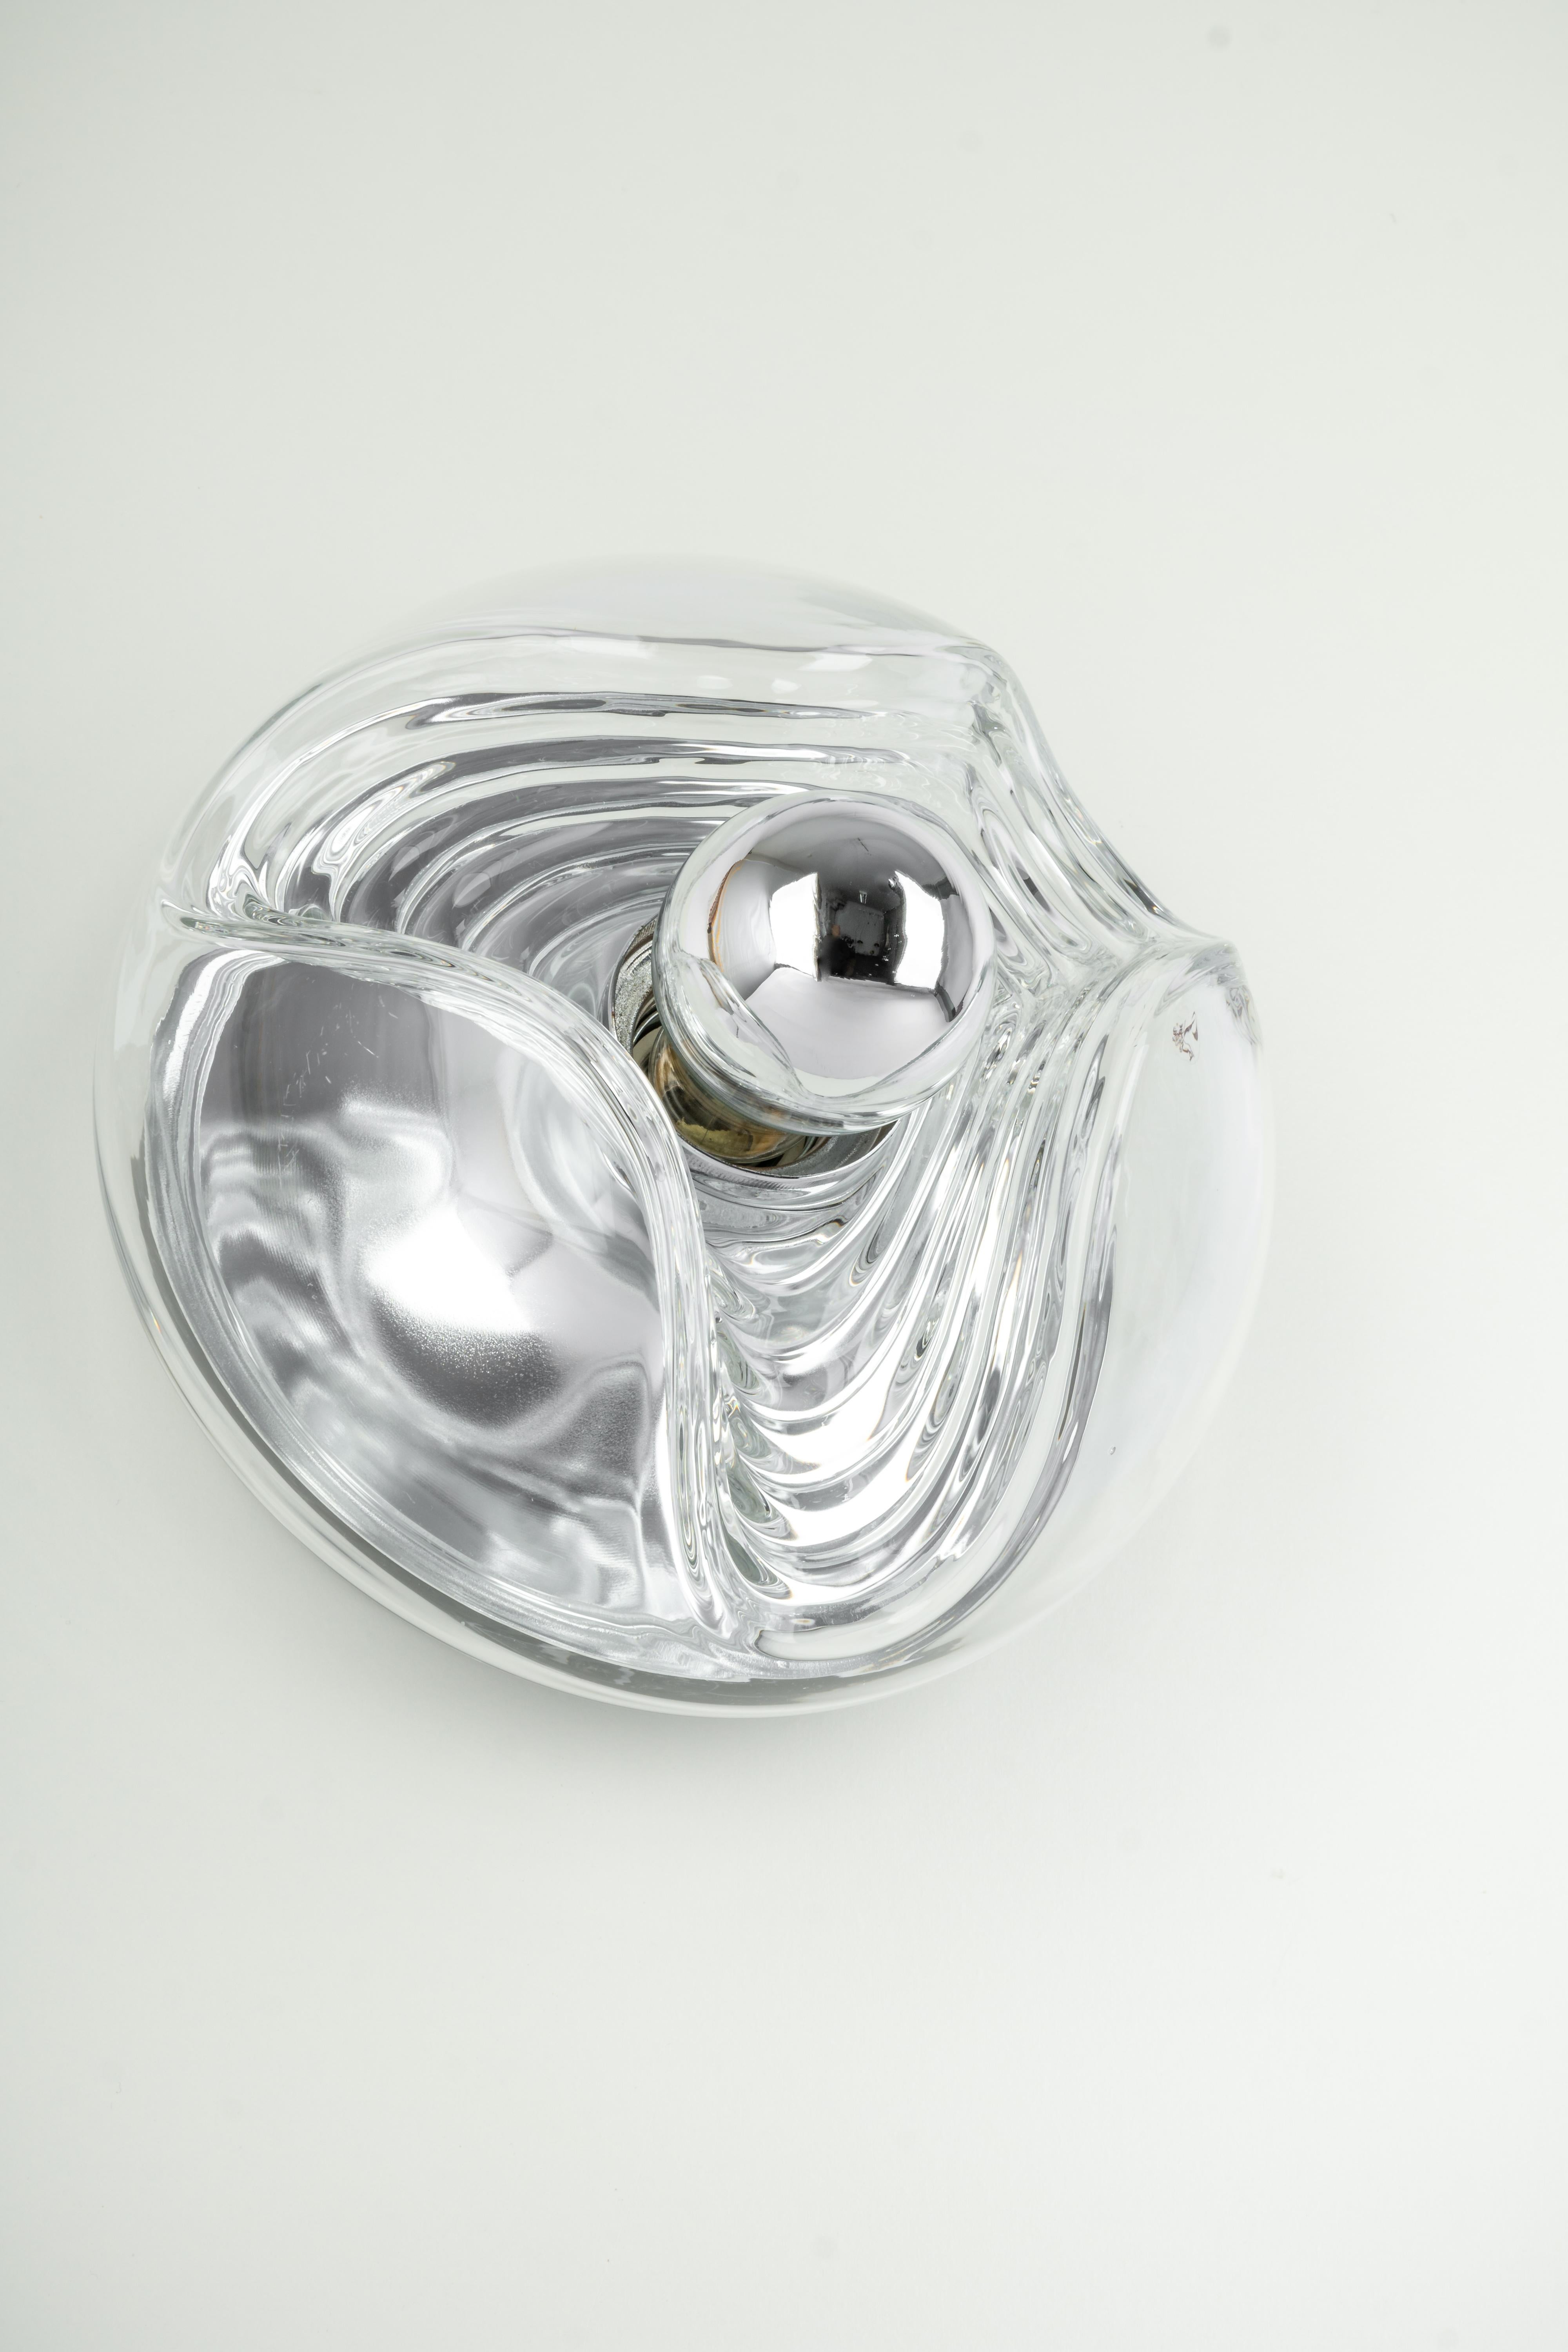 Eine besondere runde biomorphe Wandleuchte aus klarem Kristallglas, entworfen von Koch & Lowy für Peill & Putzler, hergestellt in Deutschland, ca. 1970er Jahre.

Fassungen: Eine x E27 Standard-Glühbirne. (100 W max).
Glühbirnen sind nicht enthalten.